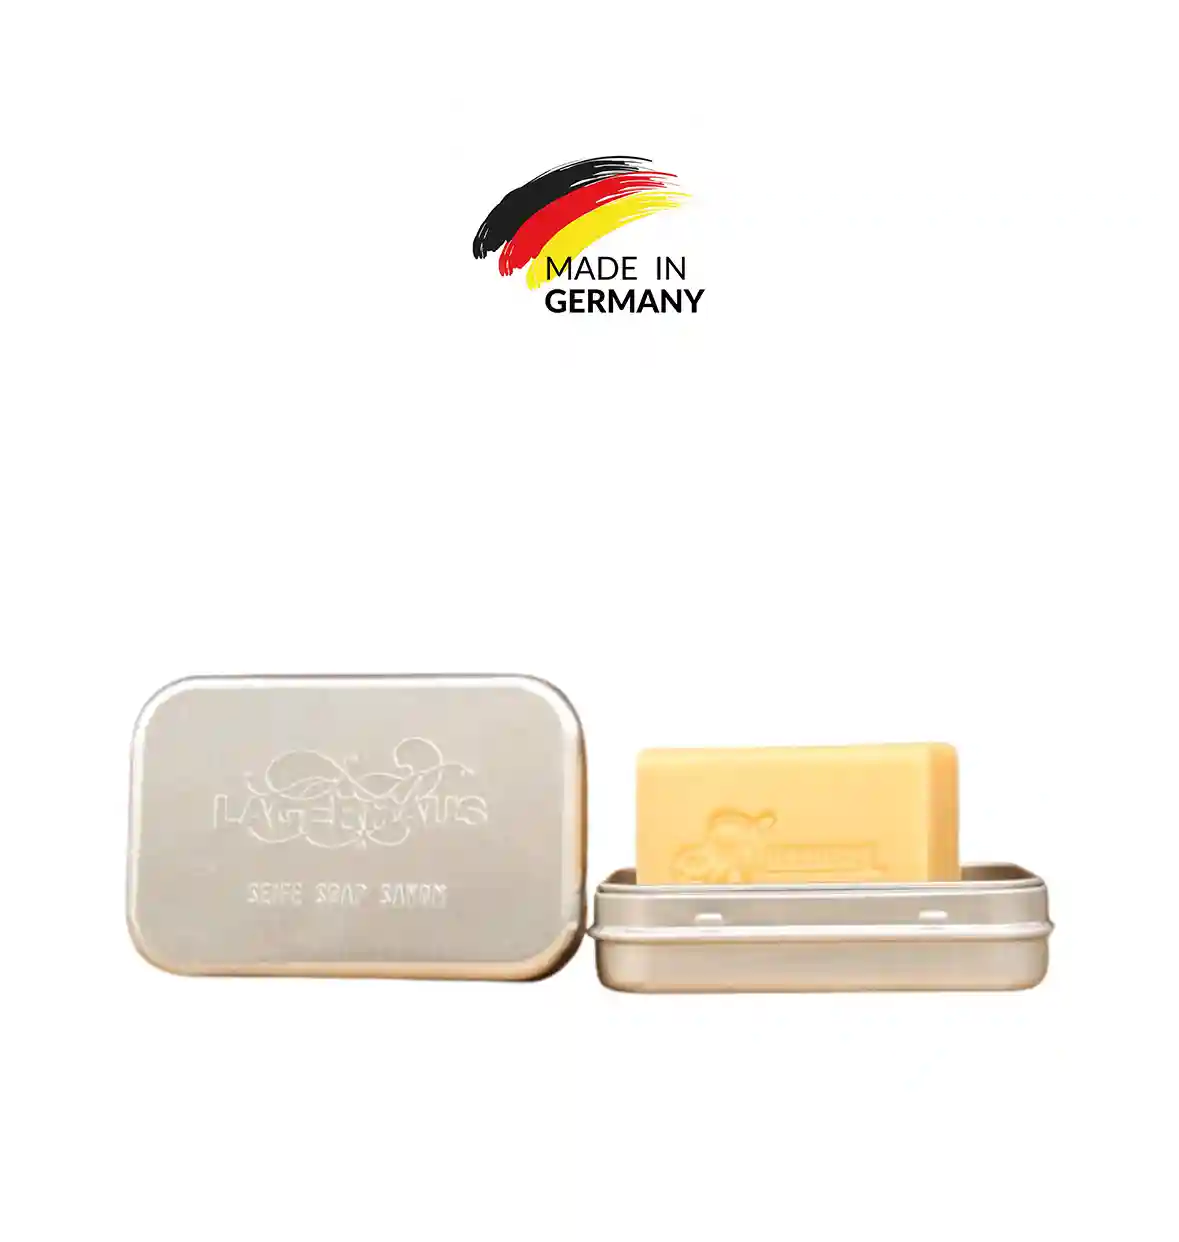 LAGERHAUS | Aluminum Soap Box